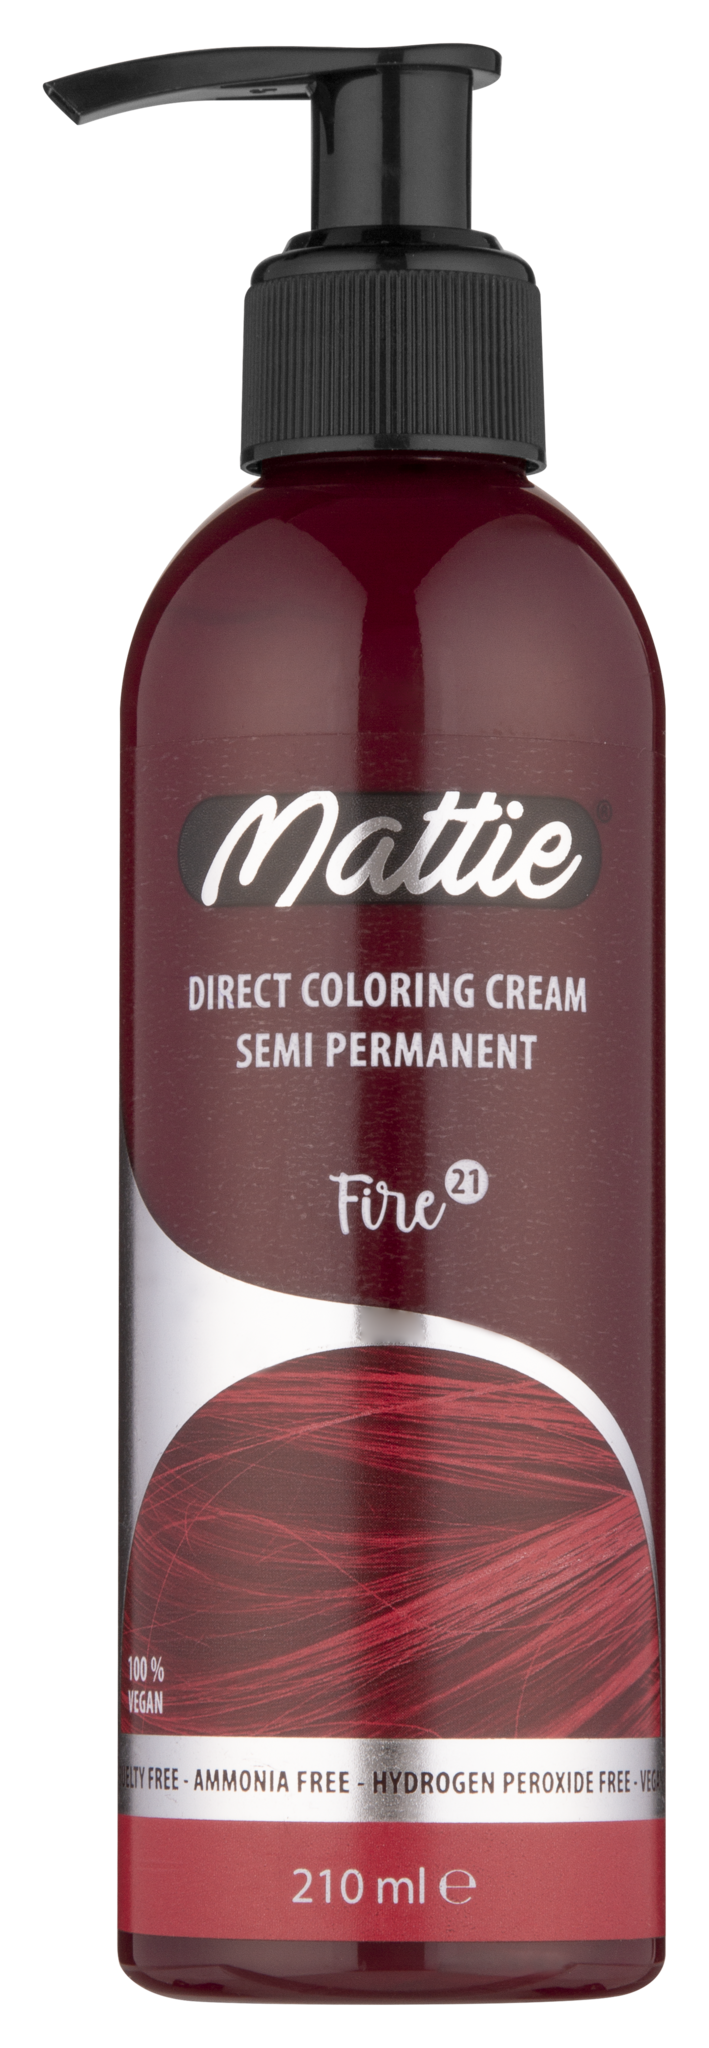 Mattie Direct Coloring Cream Semi-Permanent - Fire 210ml